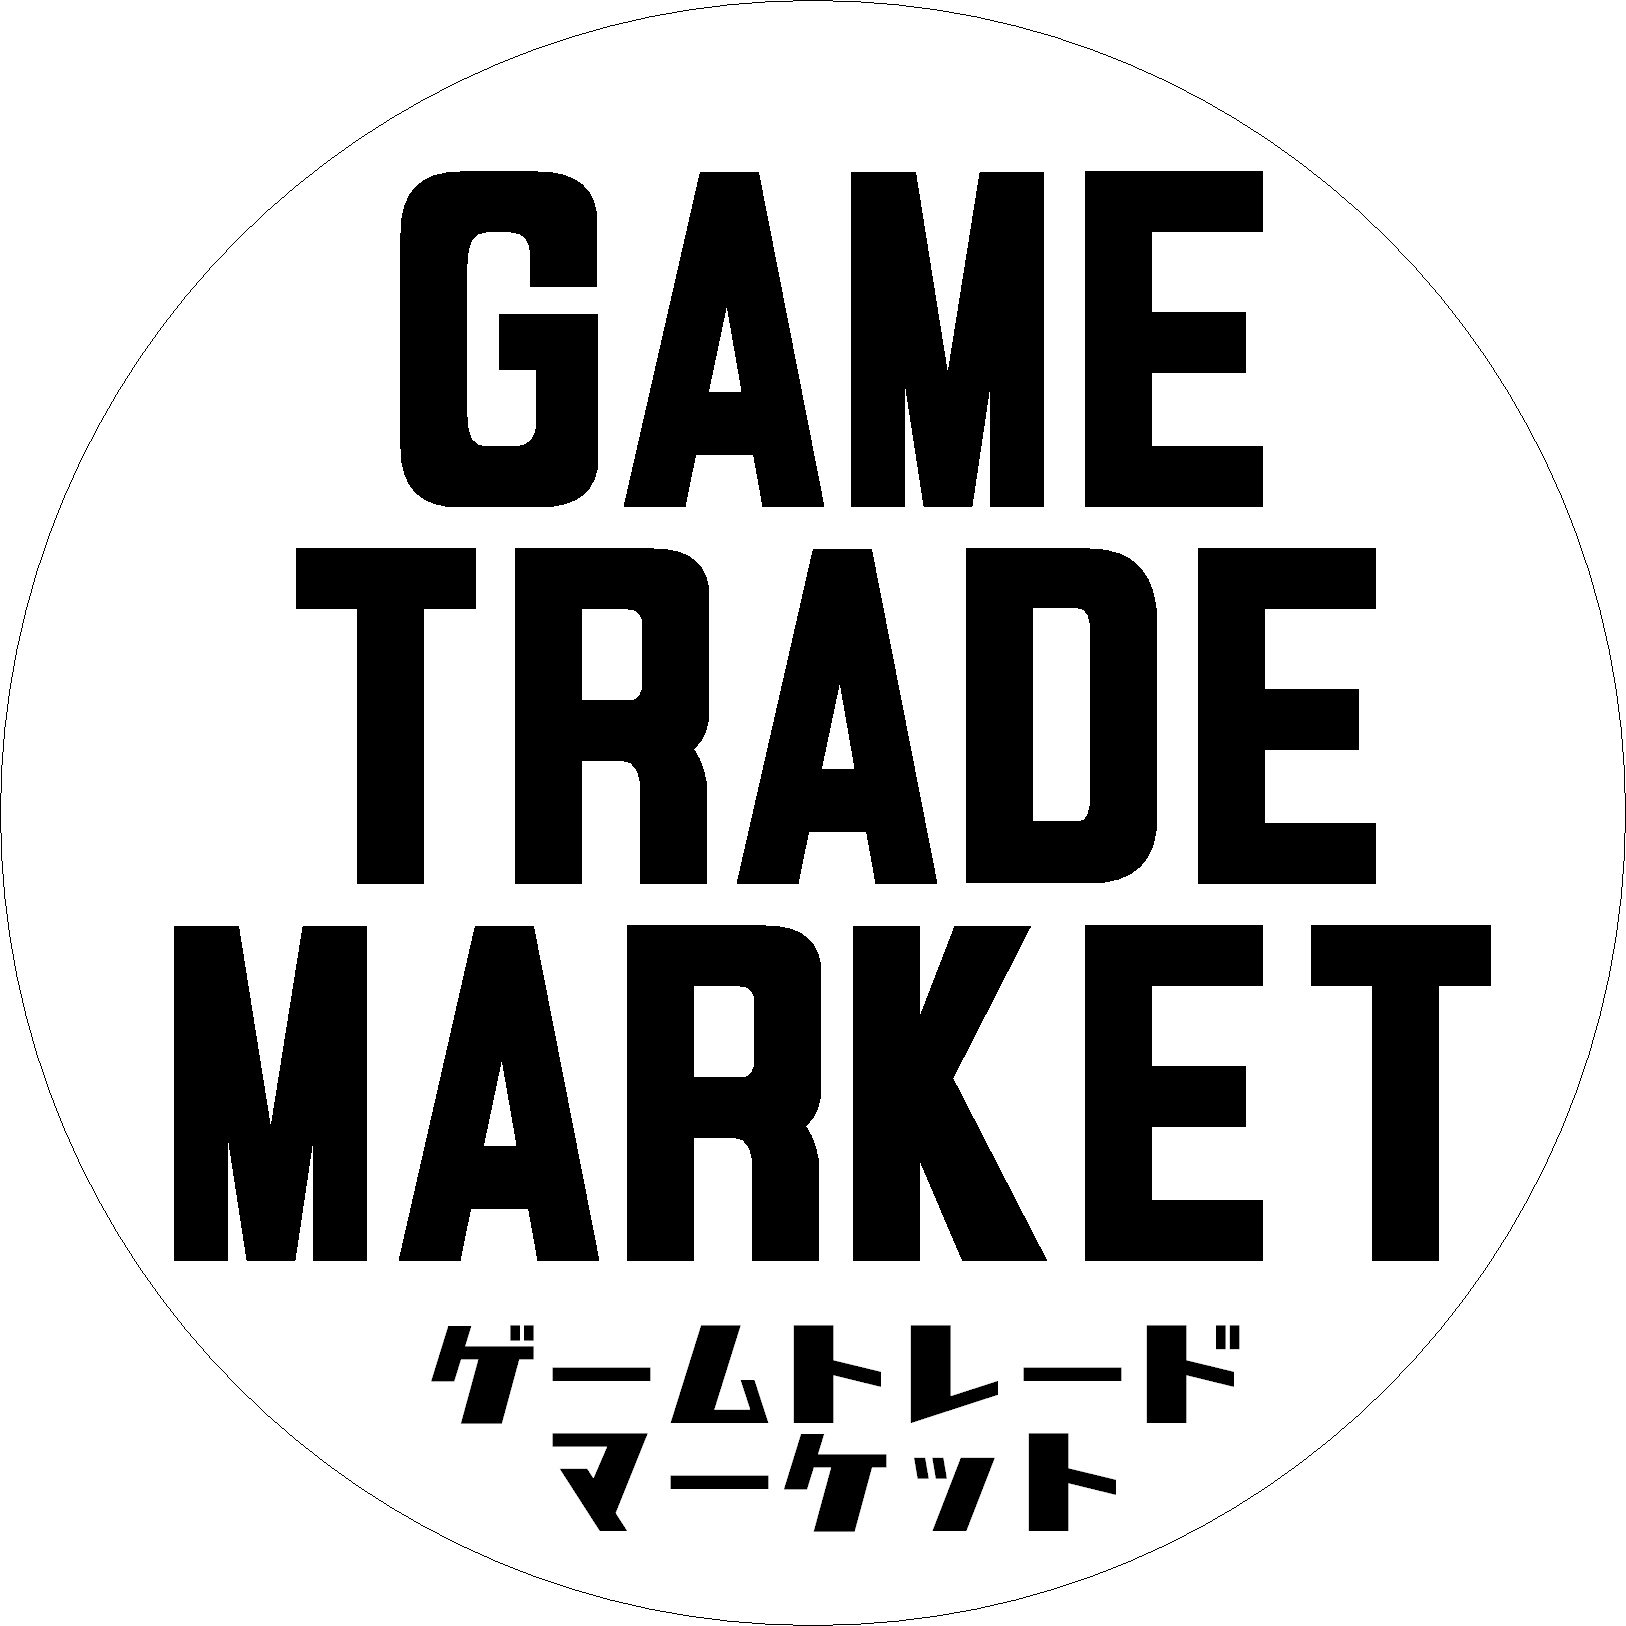 TVゲーム系専門フリーマーケット #GameTradeMarket の専用アカウントです。イベント詳細や出品物の情報を告知します。代表 @sekero セケロが管理しております。
現在次回の予定は未定です…？